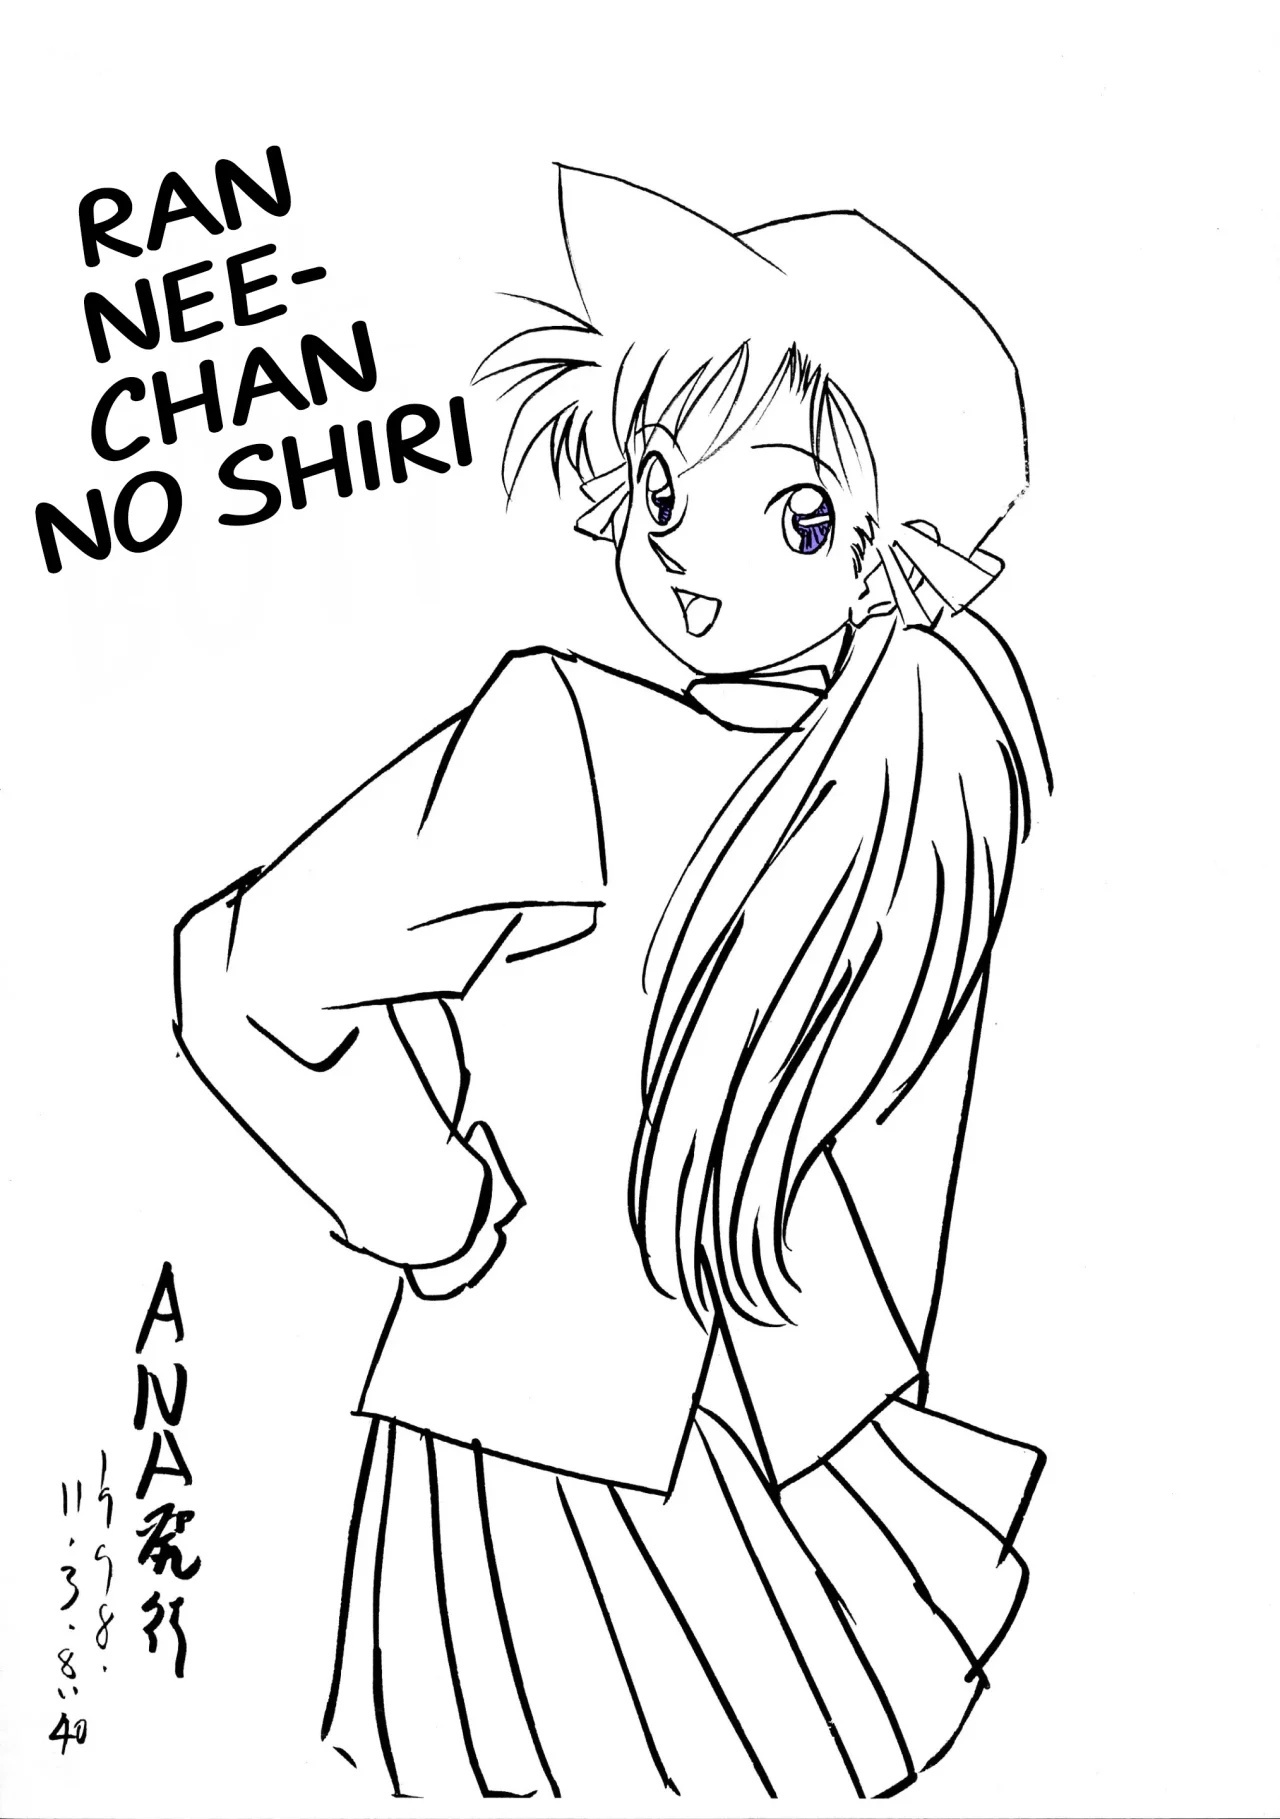 Detective Conan - Ran Nee-chan no Shiri - 0